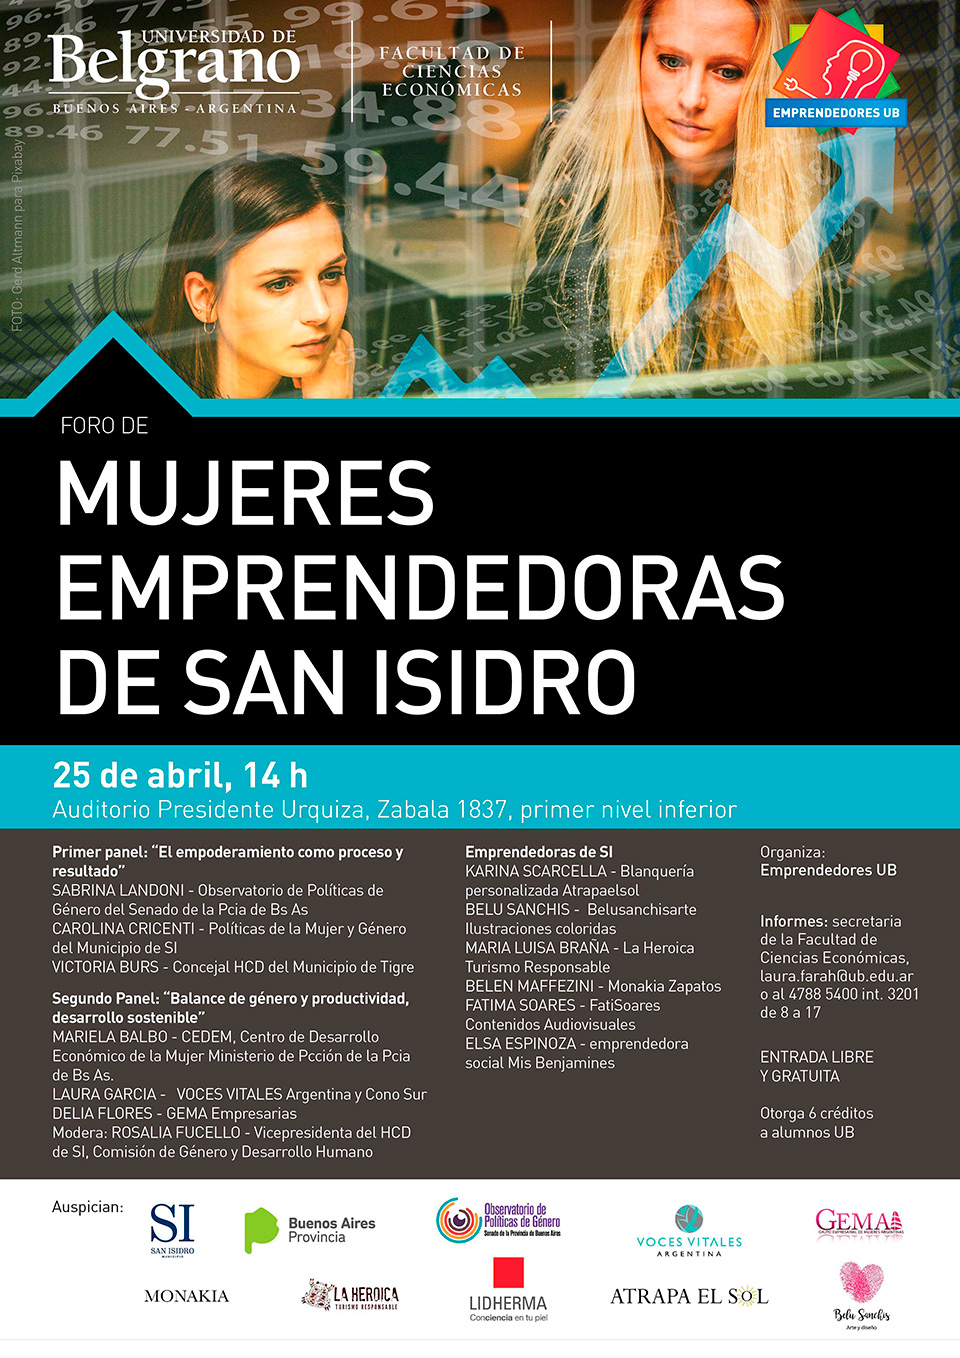 Universidad de Belgrano | Facultad de Cs. Económicas | Mujeres Emprendedoras de San Isidro